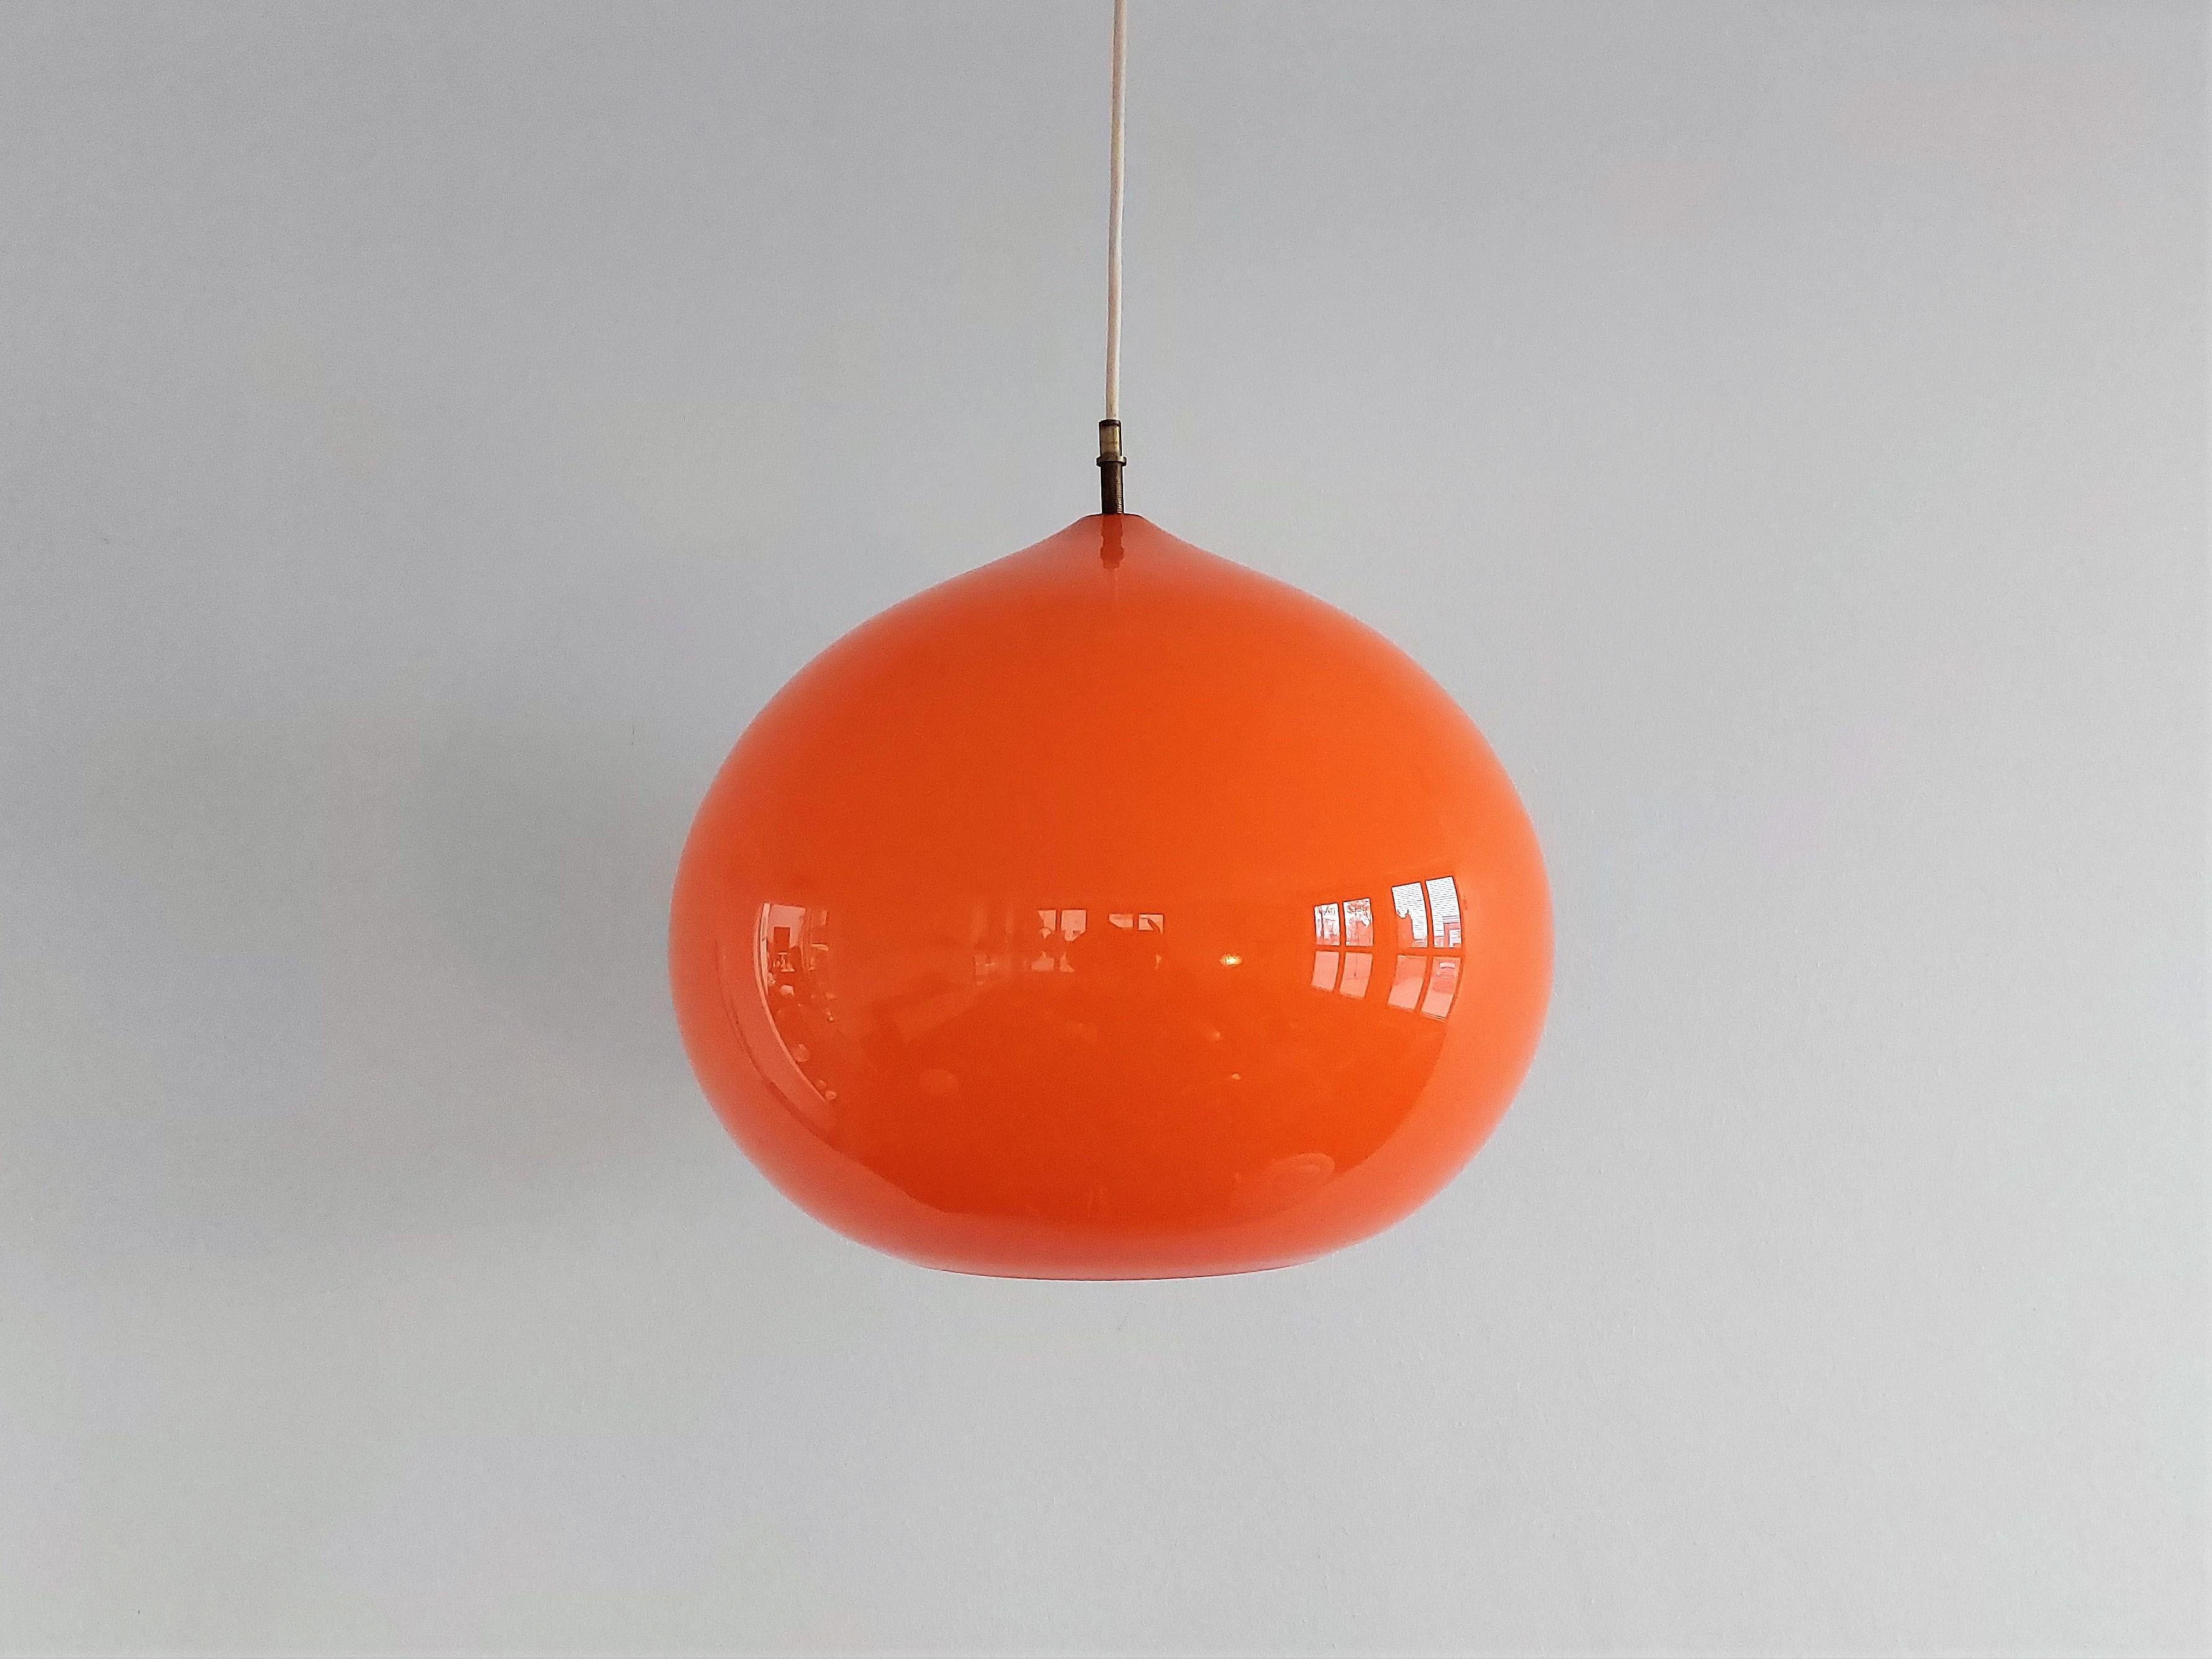 Diese sehr schöne Pendelleuchte, Modell 'Cipola' oder 'Onion', wurde von Alessandro Pianon für Vistosi in Italien entworfen. Die orangefarbene 